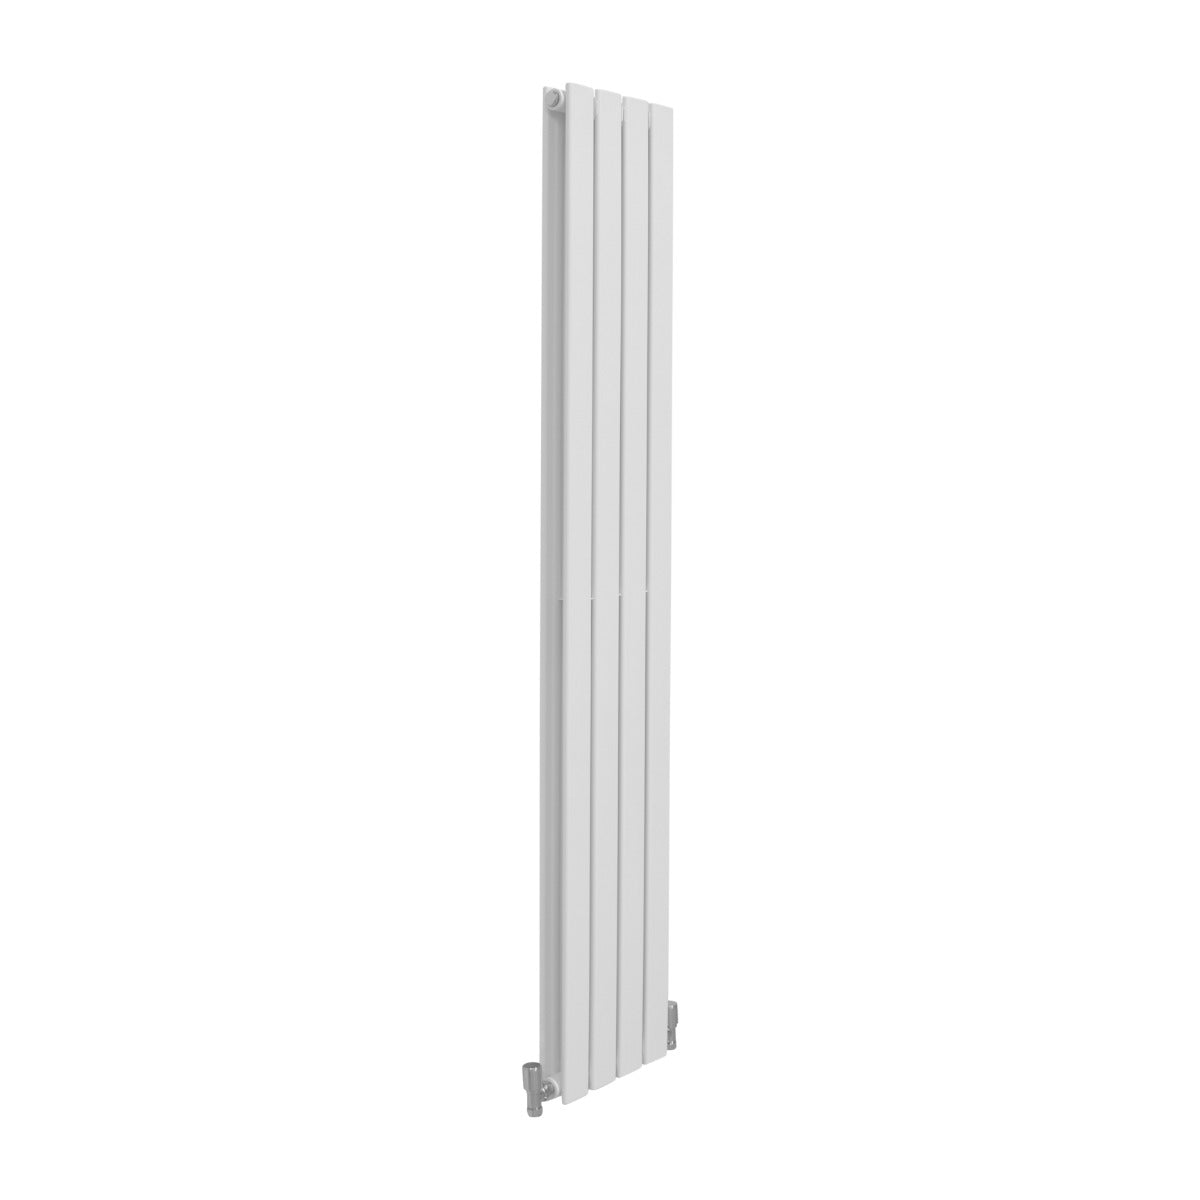 Radiadores de Panel Plano de Diseñador 1600x280mm – Blanco Brillante